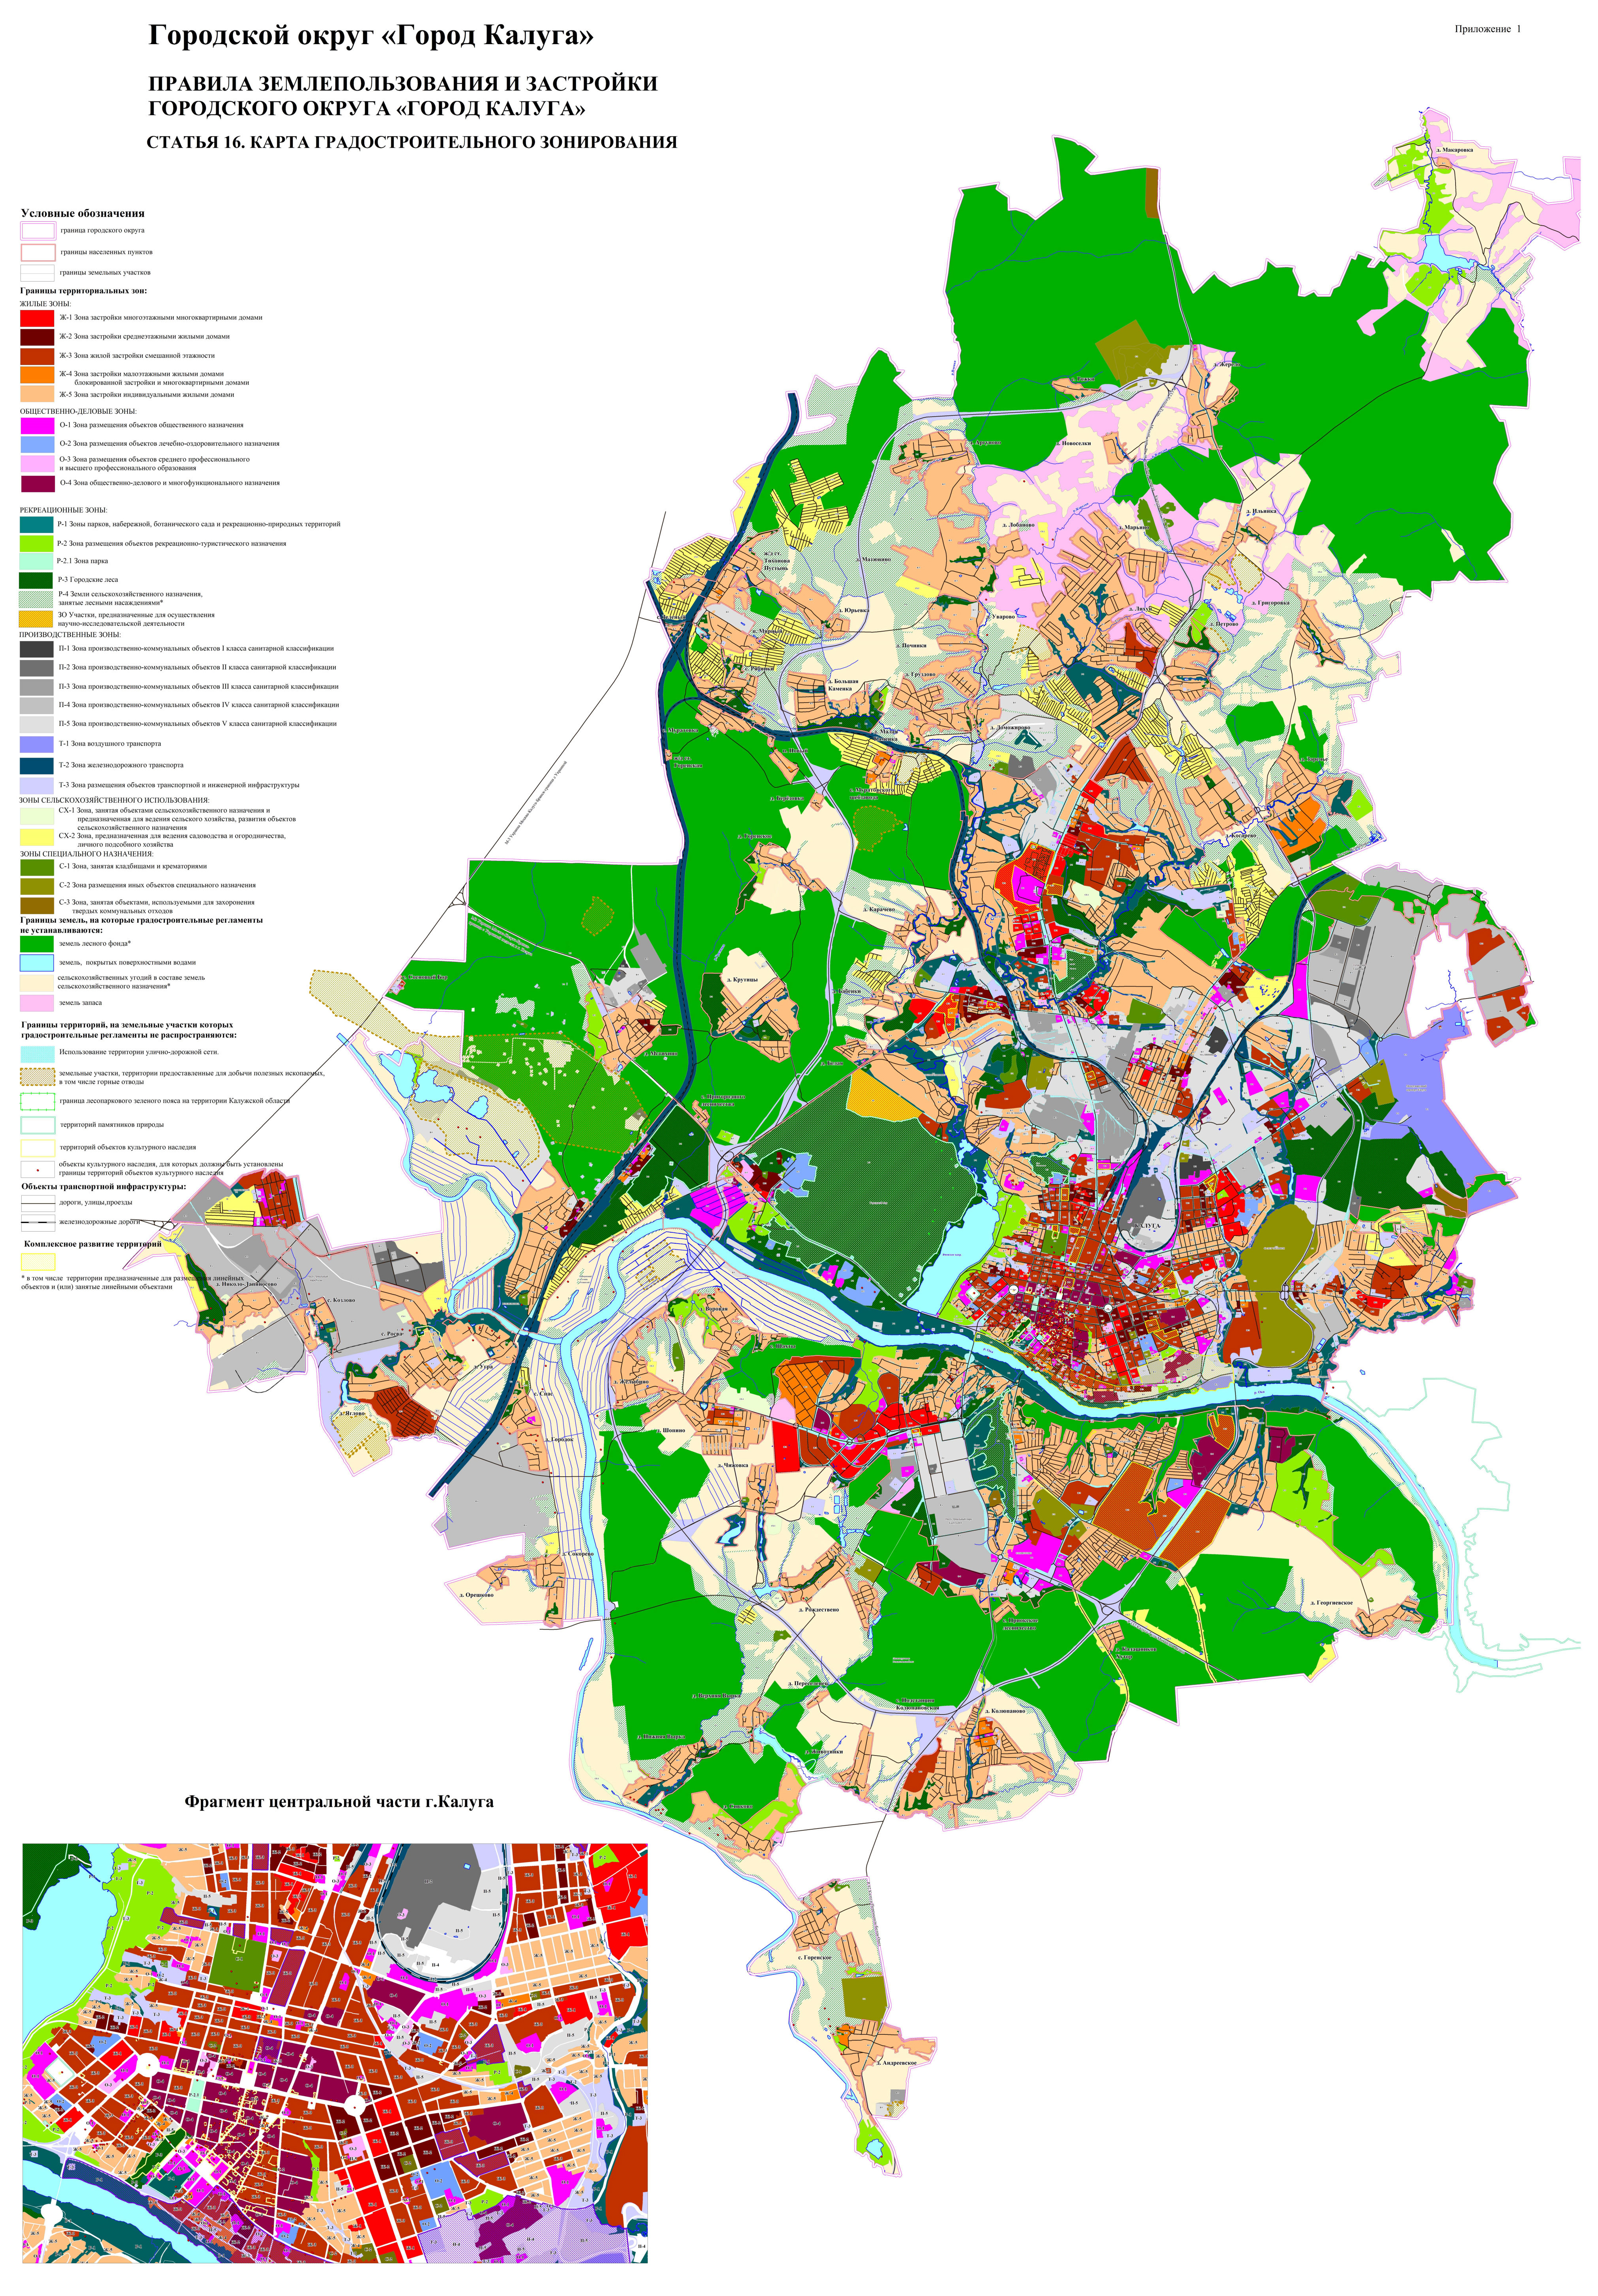 Территориальные зоны обозначены на карте градостроительного зонирования — это часть правил землепользования и застройки. Например, это карта зонирования Калуги: красным обозначена многоэтажная жилая застройка, желтоватым — ИЖС, различные оттенки серого — это производственно-коммунальные зоны. Источник: kaluga⁠-⁠gov.ru